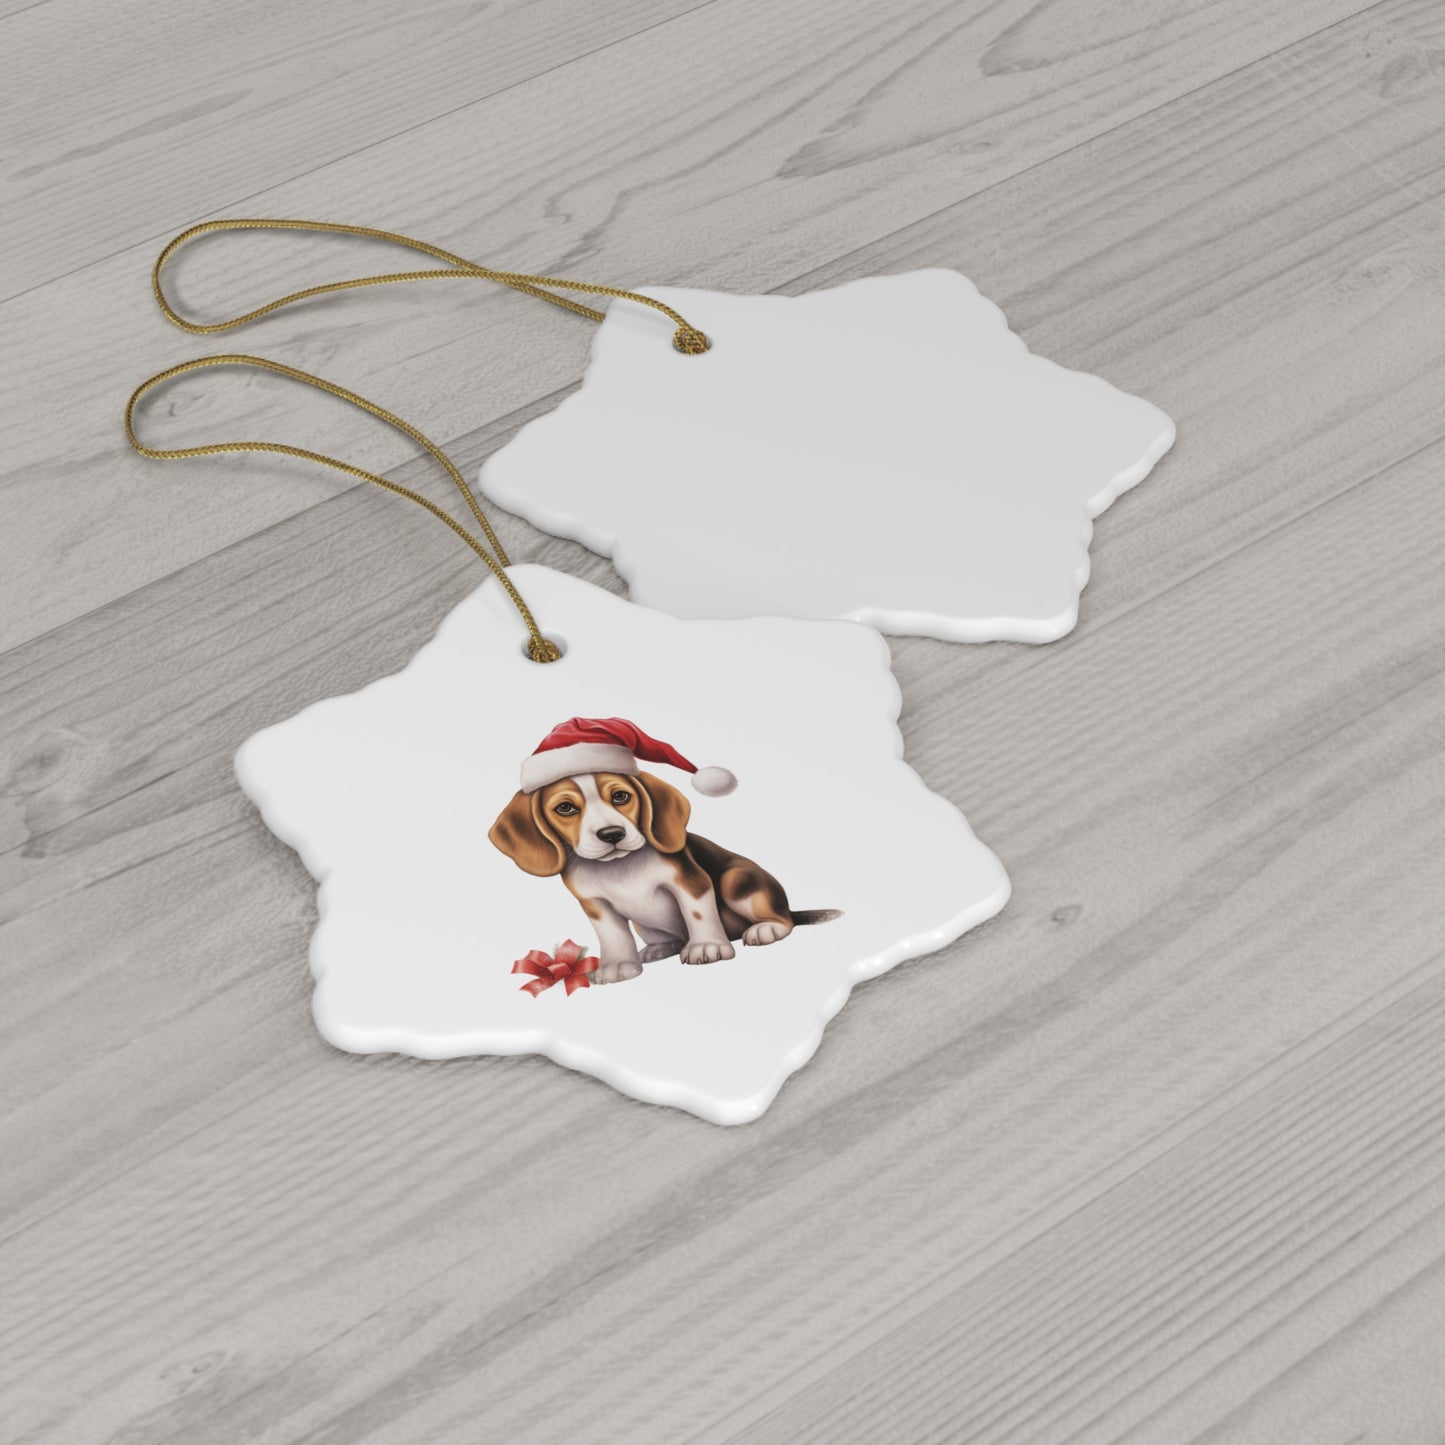 Beagle Ceramic Christmas Ornament